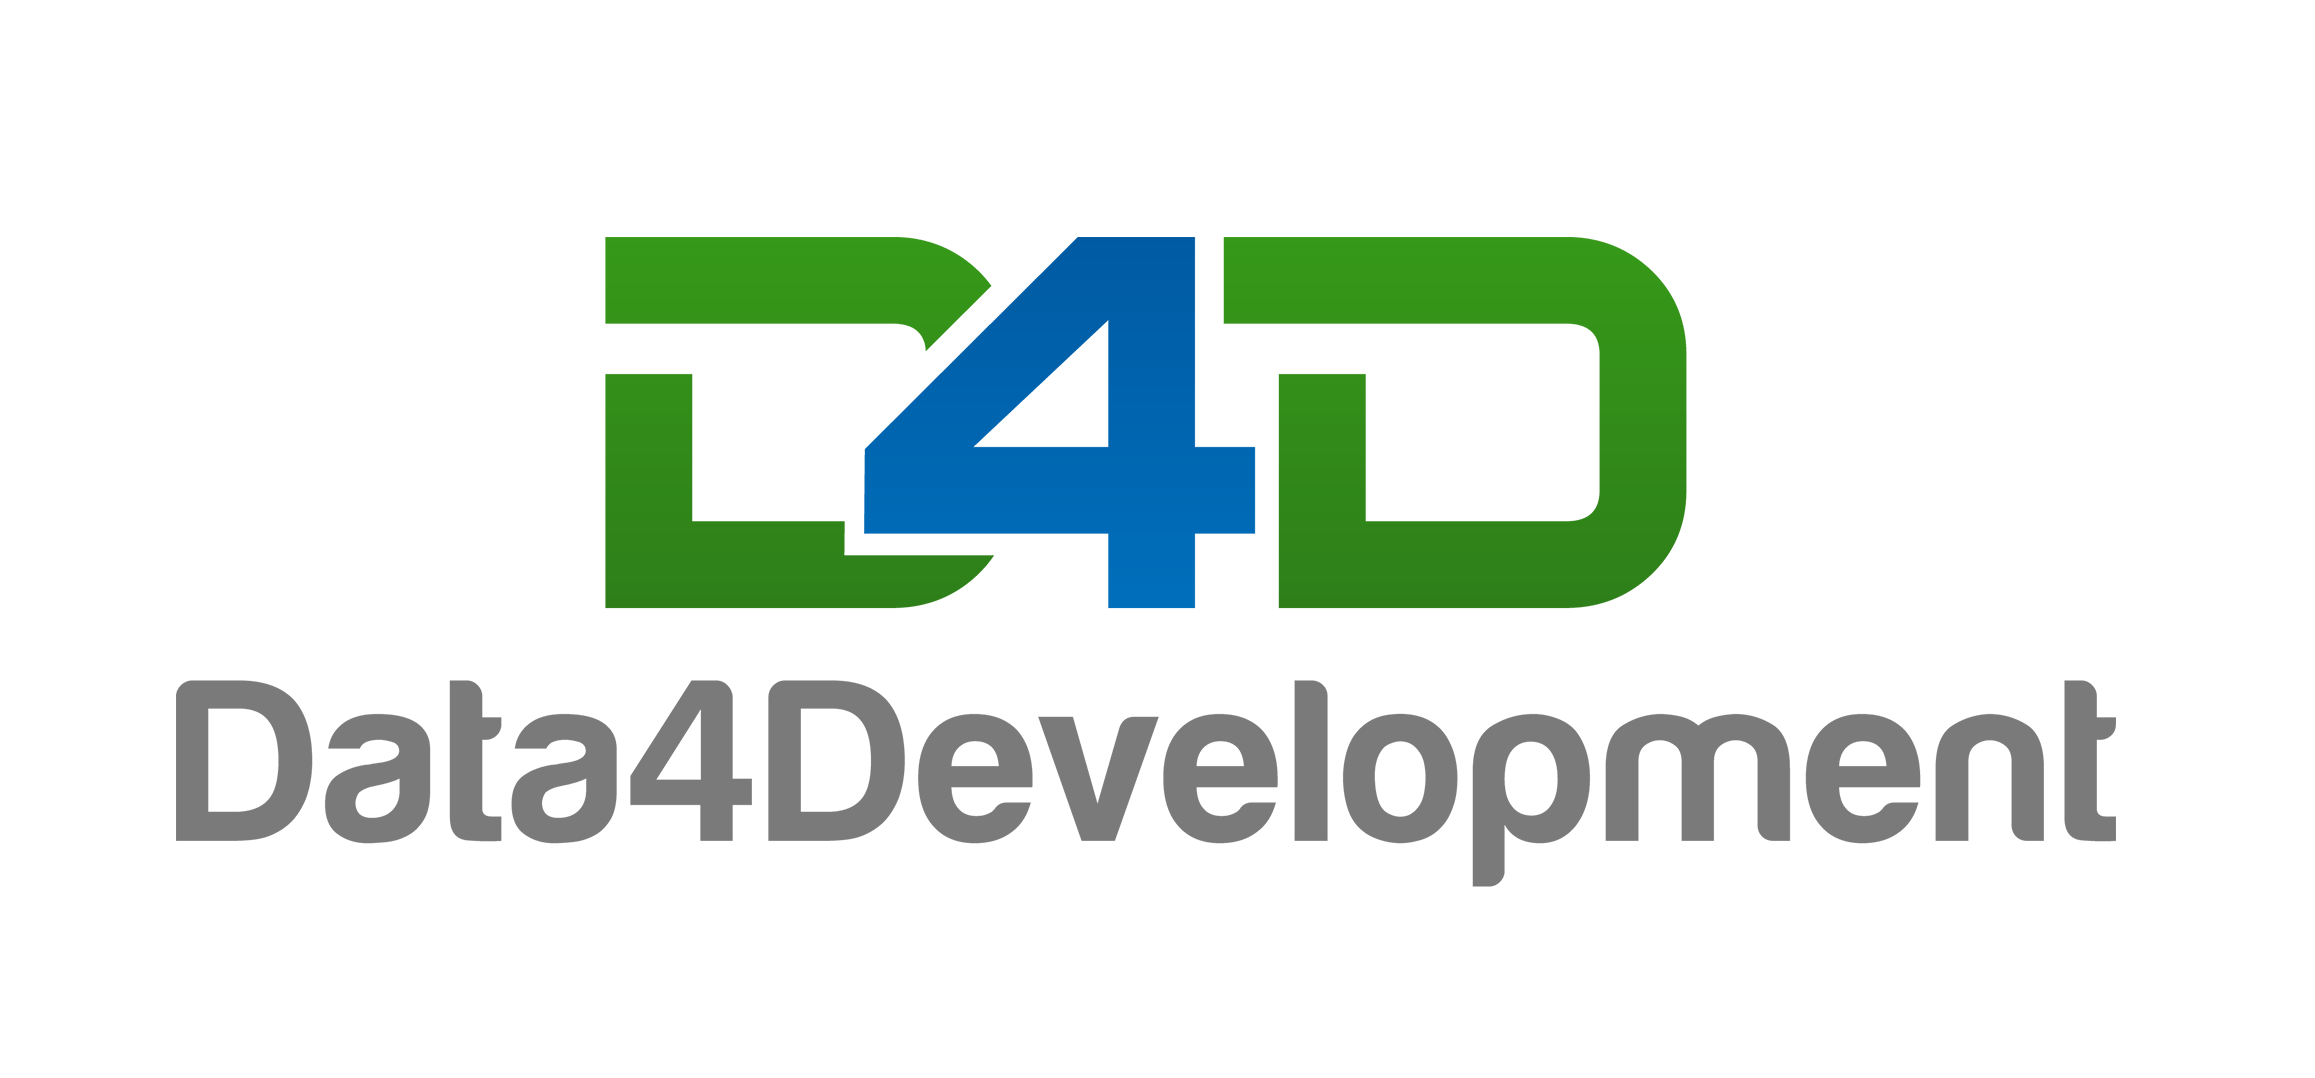 D4D Logo - Data4Development